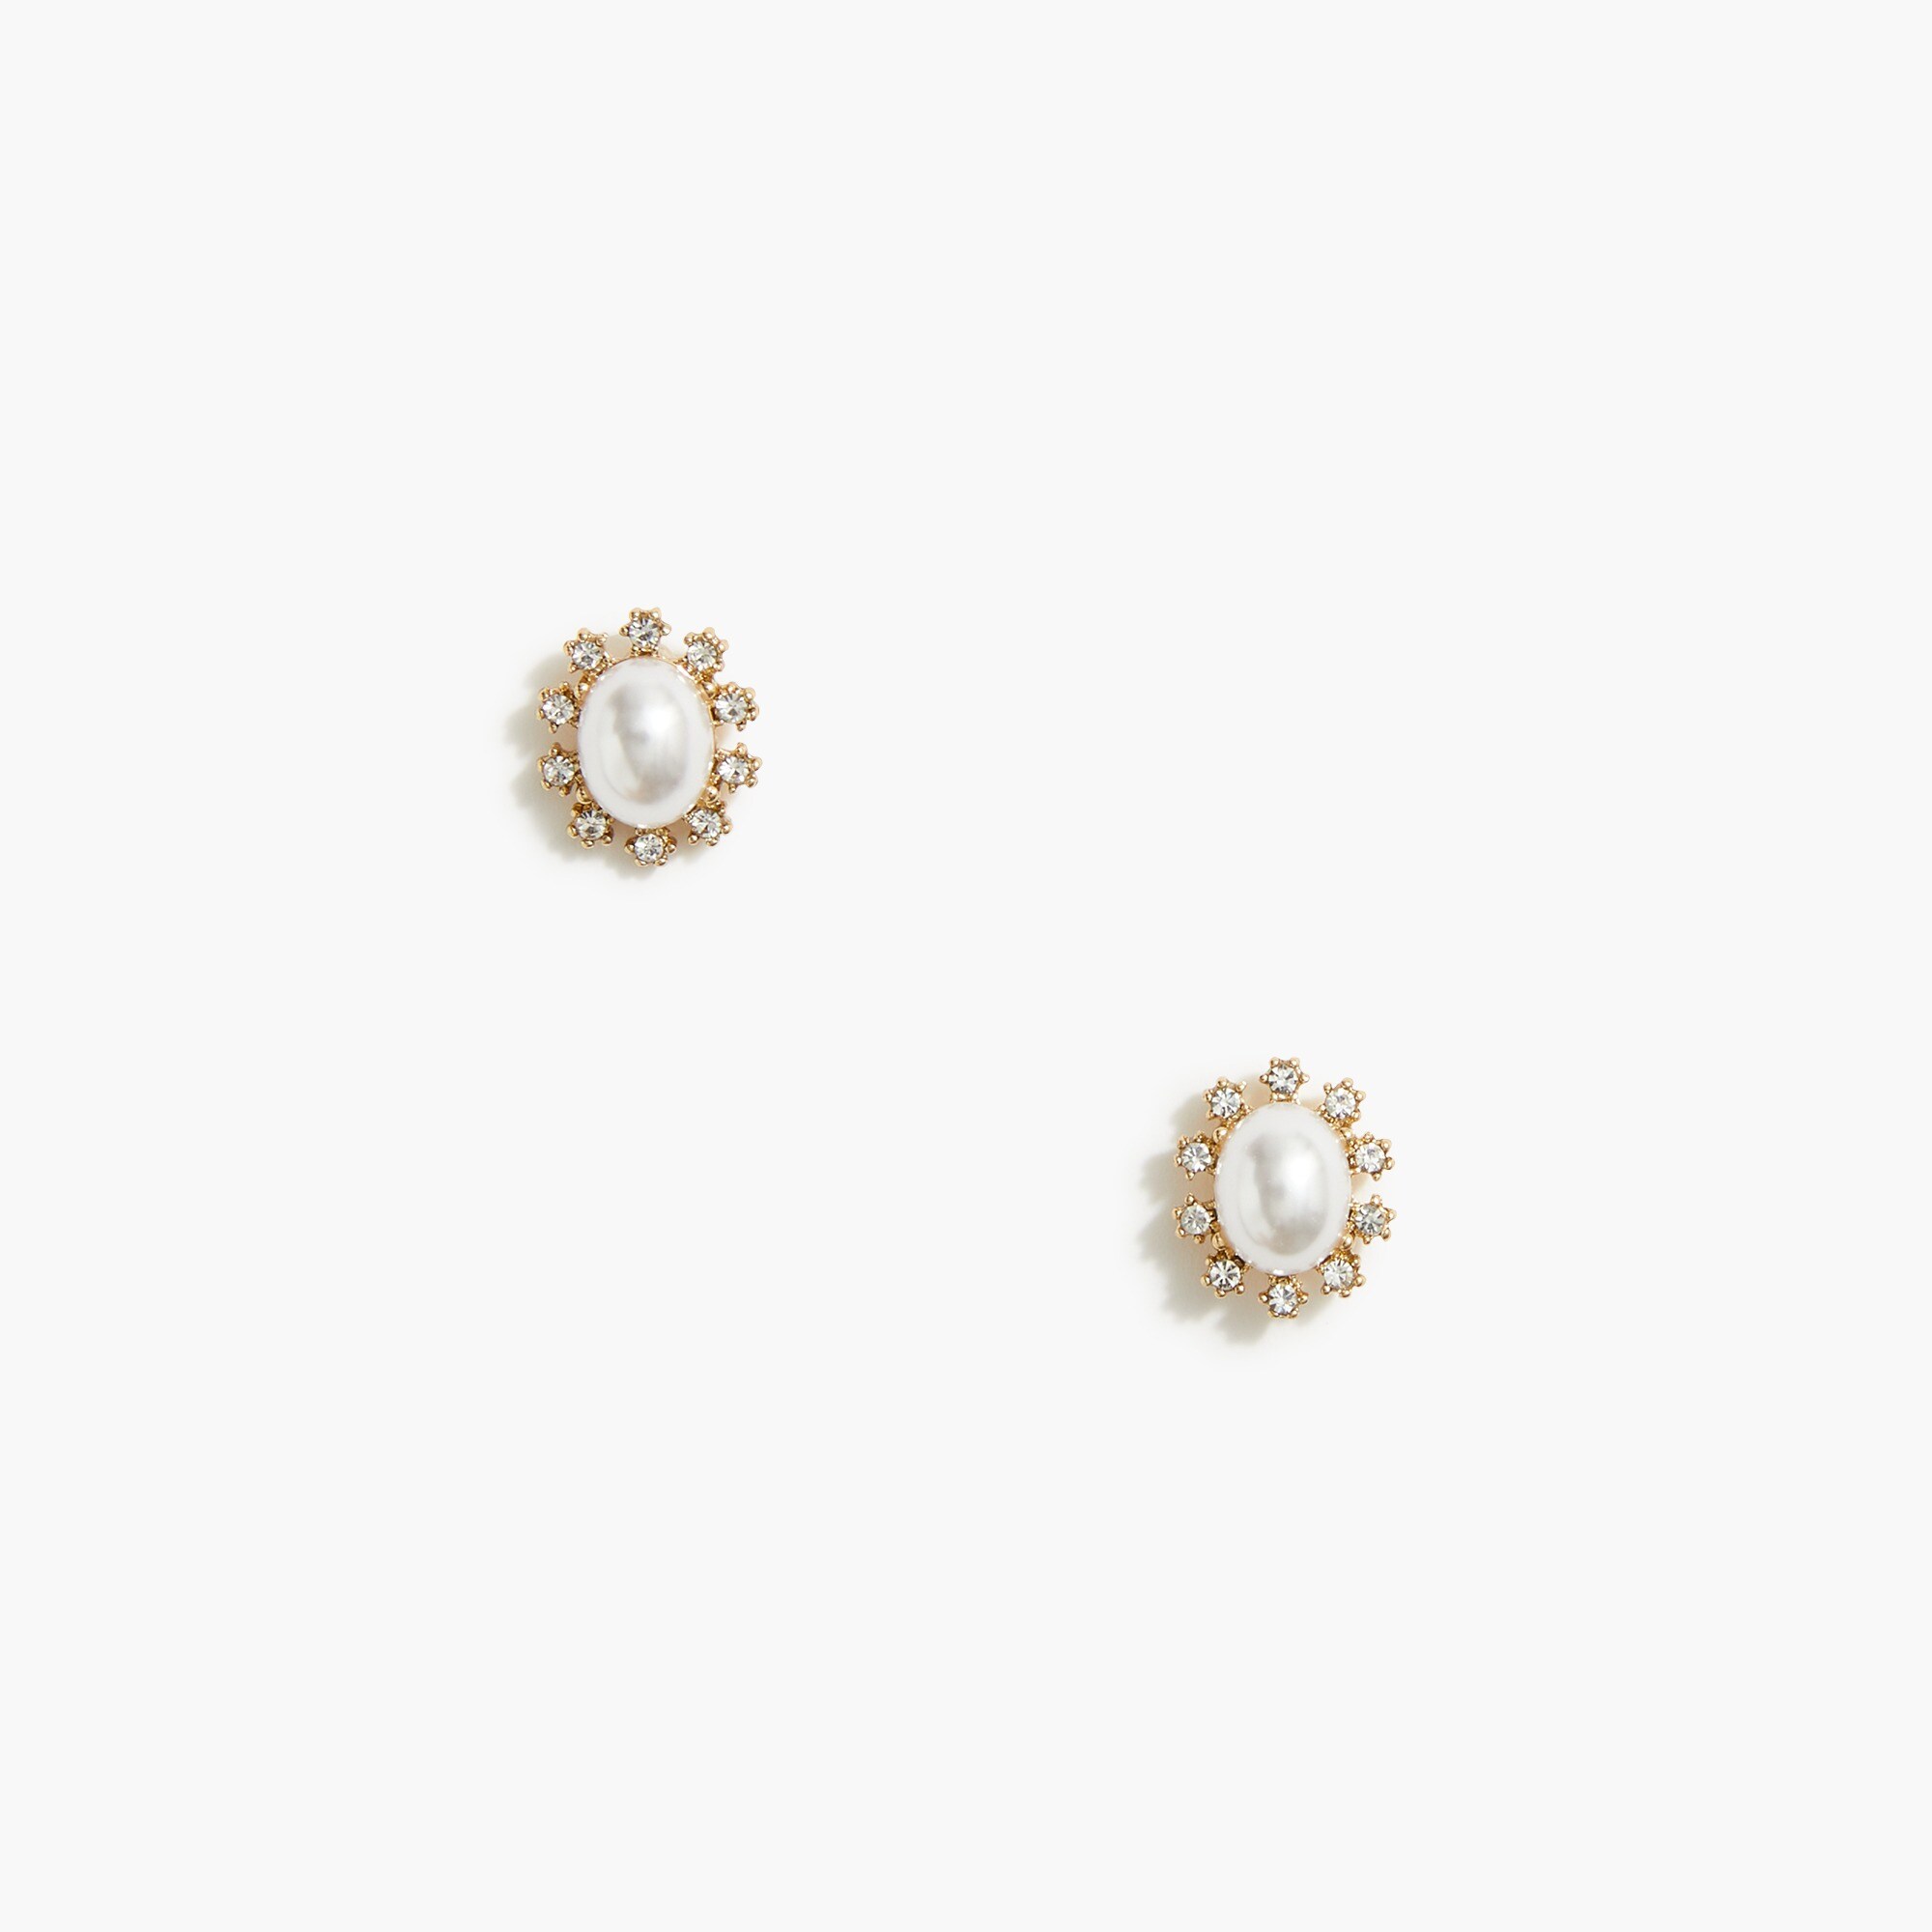  Crystal and pearl stud earrings